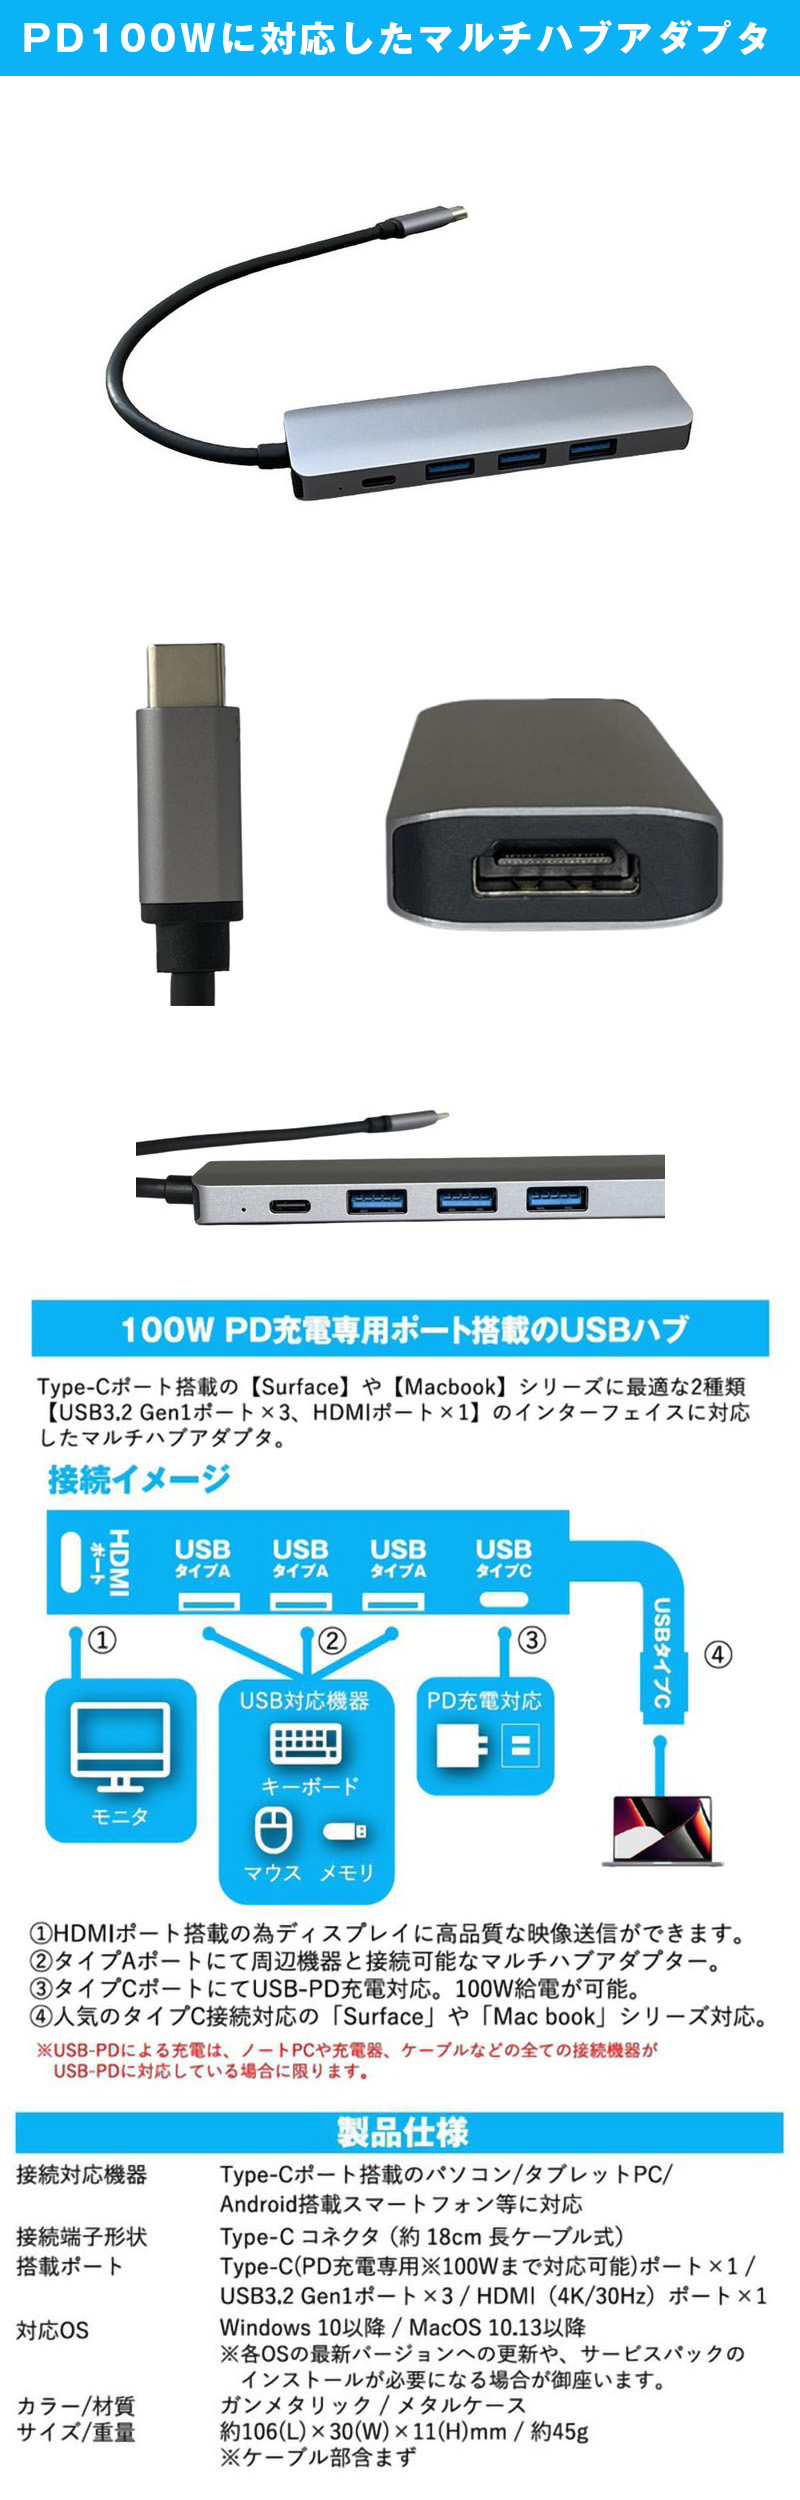 PD100W対応 USBドッキングハブ ガンメタリックのLP一枚画像。100W PD充電専用ポート搭載のUSBハブ。Type-Cポート搭載の1【Surface】や【Macbook】シリーズに最適な2種類【USB3.2 Gen1ポート×3、HDMIポート×1】のインターフェイスに対応したマルチハブアダプタ。①HDMIポート搭載の為ディスプレイに高品質な映像送信ができます。②タイプAポートにて周辺機器と接続可能なマルチハブアダプター。③タイプCポートにてUSB-PD充電対応。100W給電が可能。④人気のタイプC接続可能の「Surface」や「Macbook」シリーズ対応。※USB-PDによる充電は、ノートPCや充電器、ケーブルなどの全ての接続機器がUSB-PDに対応している場合に限ります。●製品仕様　・接続対応機器：Type-Cポート搭載のパソコン/タブレットPC/Android搭載スマートフォン等に対応。・接続端子形状：Type-Cコネクタ(約18cm長ケーブル式)。・搭載ポート：Type-C(PD充電専用※100Wまで対応可能)ポート×1/USB3.2 Gen1ポート×3/HDMI(4K/30Hz)ポート×1。・対応OS：Windows 10以降/MacOS 10.13以降。※各OSの最新バージョンへの更新や、サービスパックのインストールが必要になる場合が御座います。・カラー/材質：ガンメタリック/メタルケース。・サイズ/重量：約106(L)×30(W)×11(H)mm/約45g。※ケーブル部含まず。